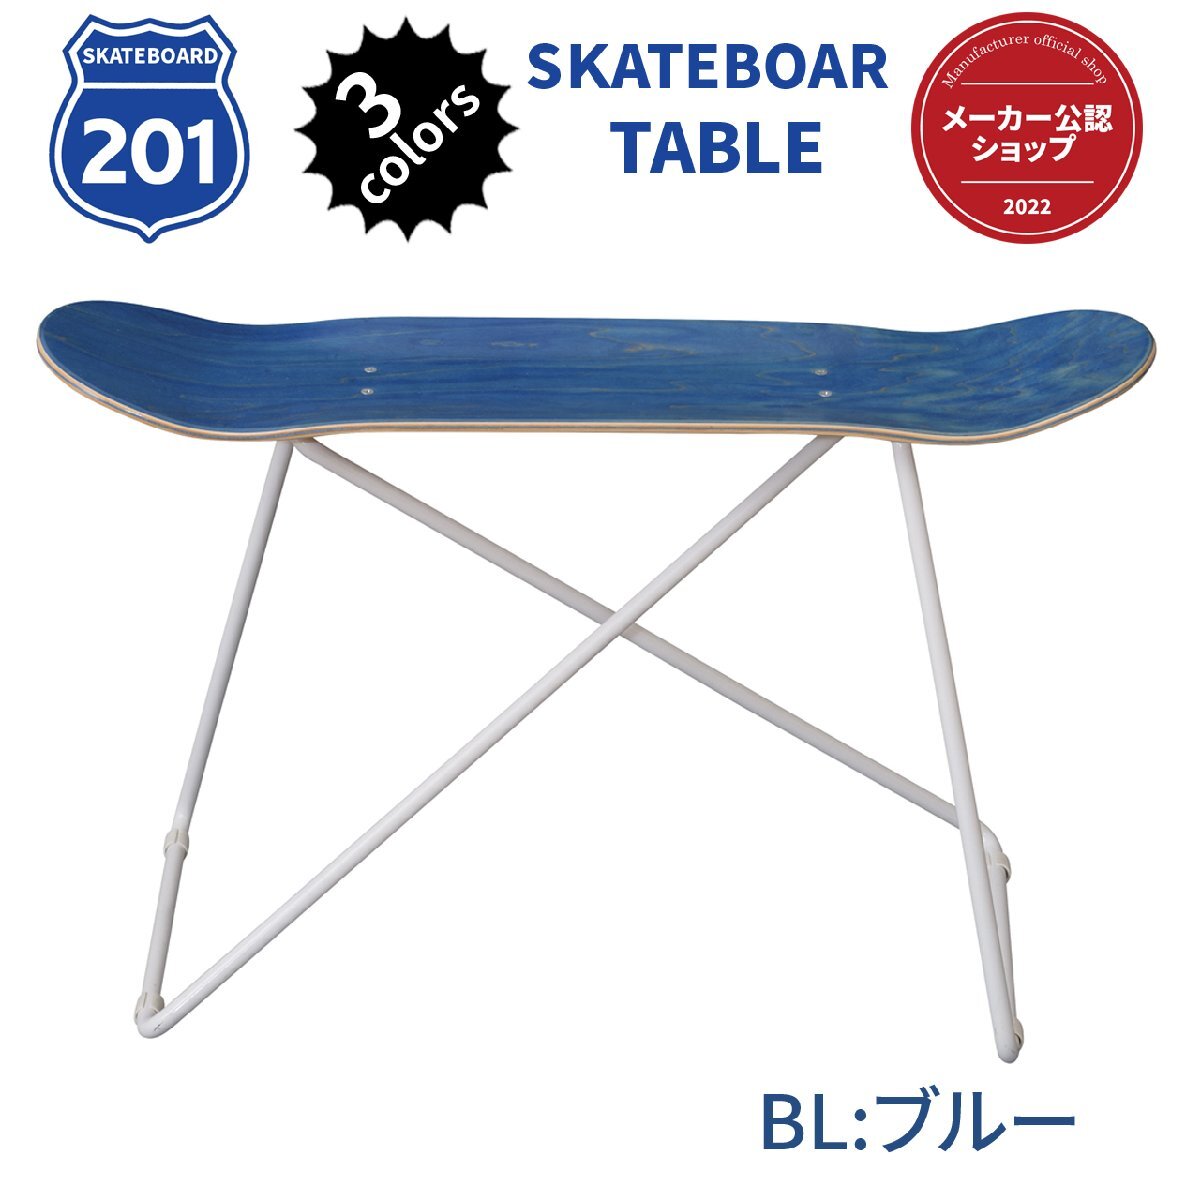 スケートボードテーブル ブルー テーブル カフェテーブル お洒落でカワイイ SF-201BL AZ